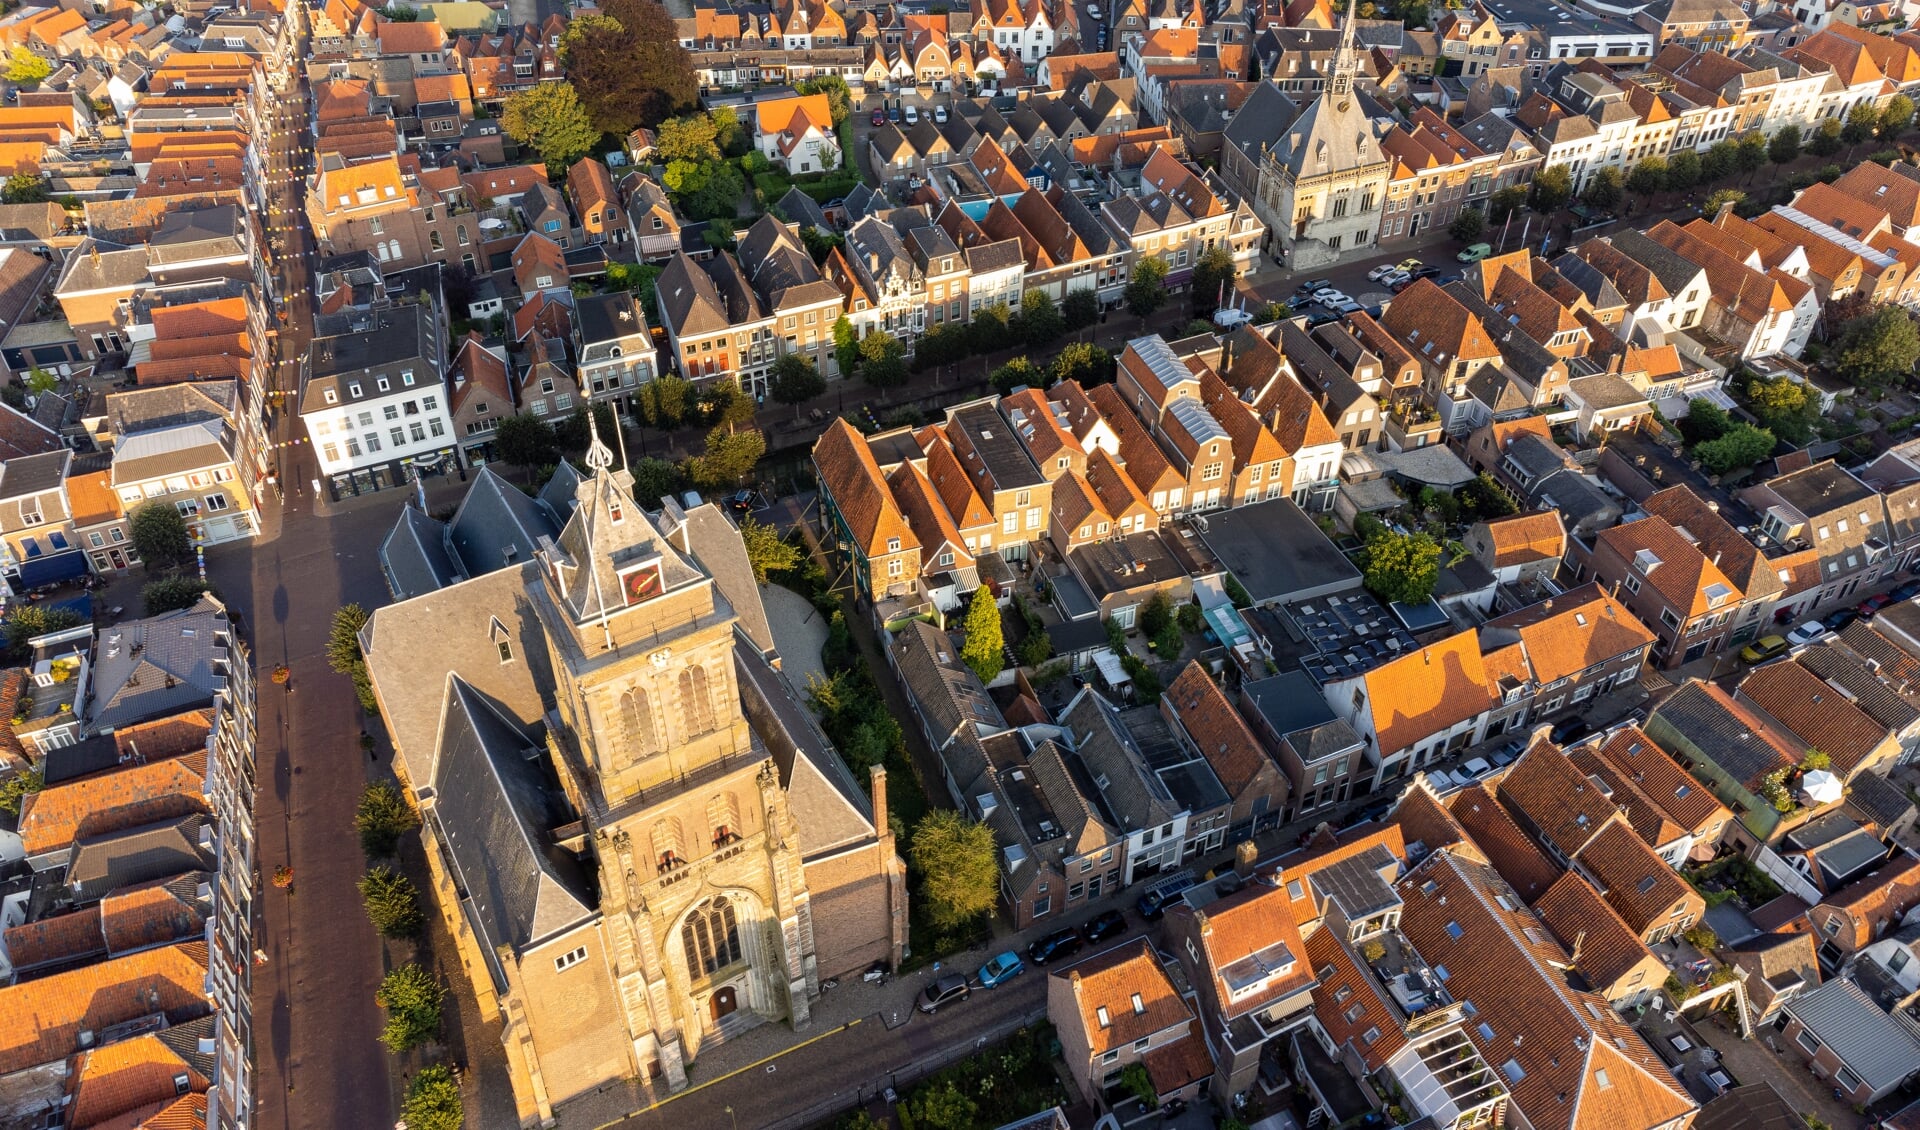 • De binnenstad van Schoonhoven vanuit de lucht gezien.